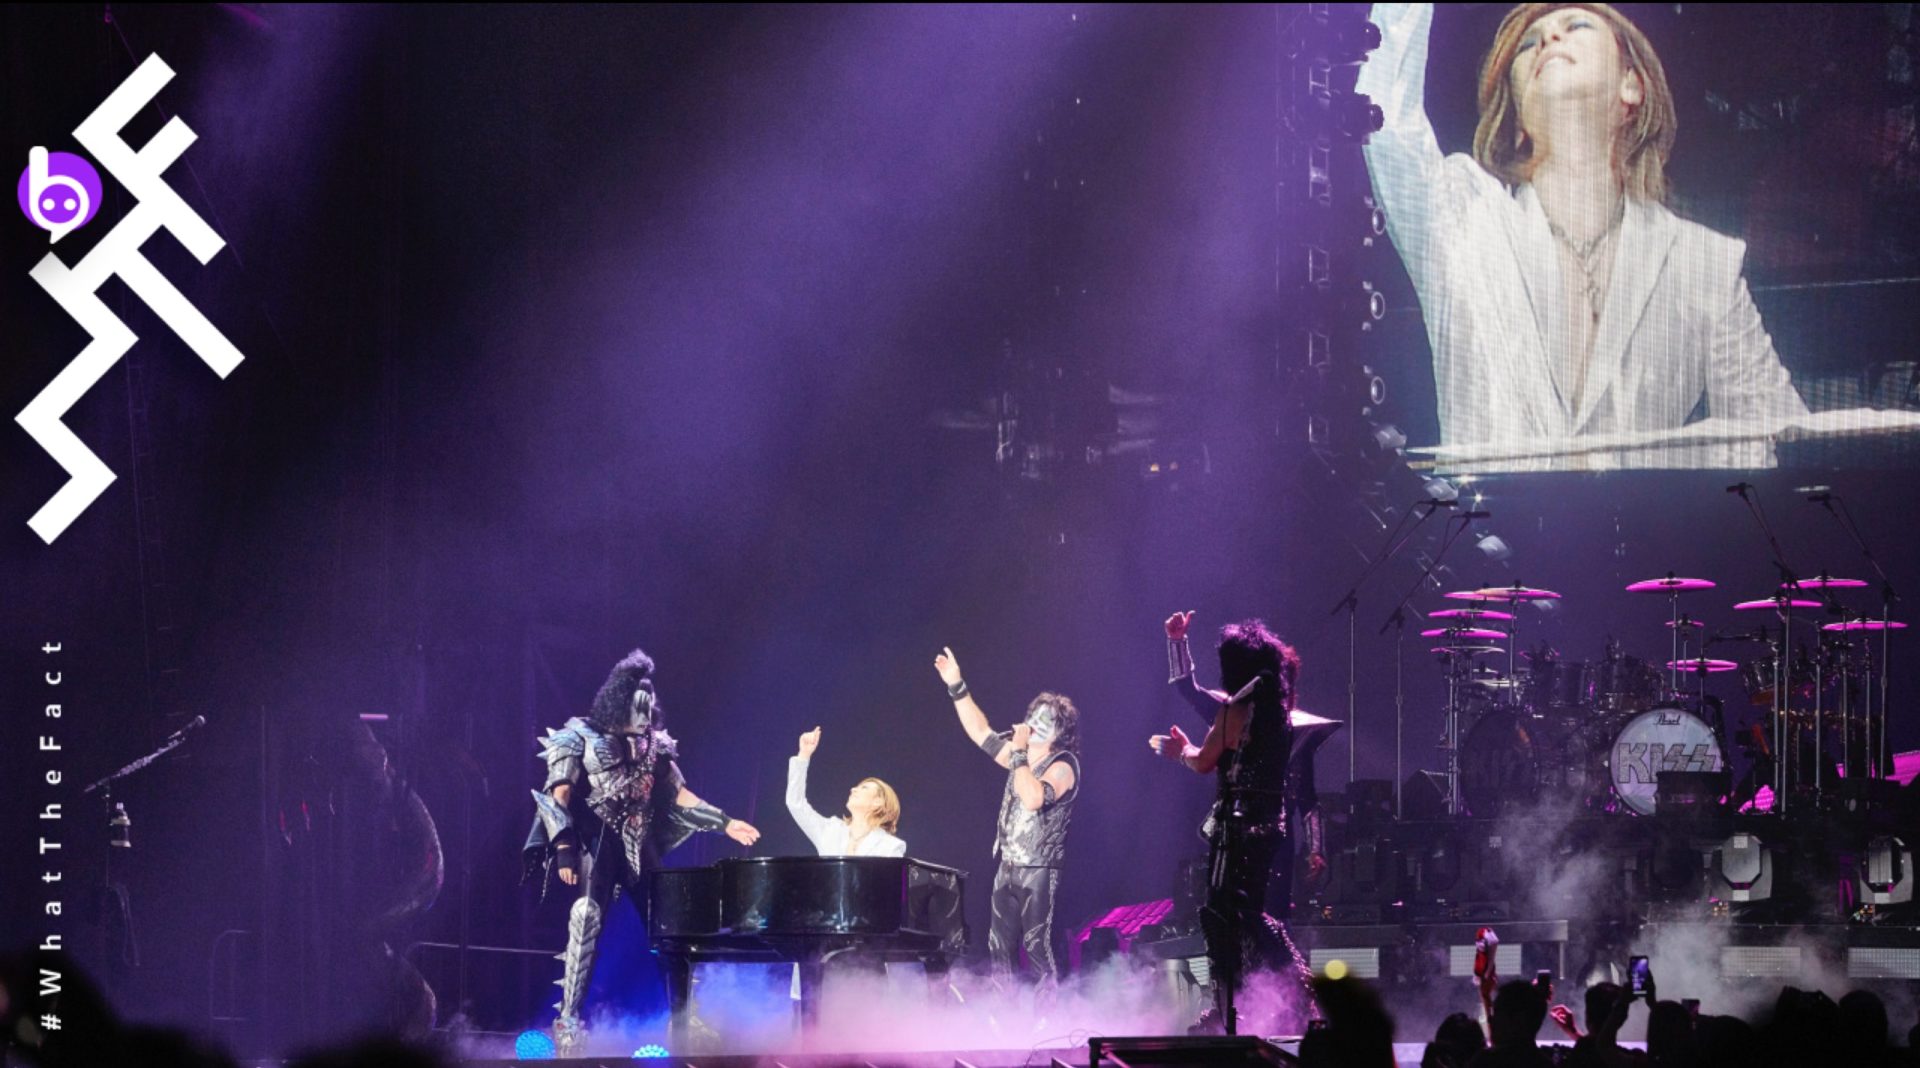 Yoshiki โผล่เซอร์ไพรส์ในคอนเสิร์ต “Kiss” แรงบันดาลใจที่ทำให้ Yoshiki ผ่านช่วงเวลาเลวร้ายของชีวิตไปได้